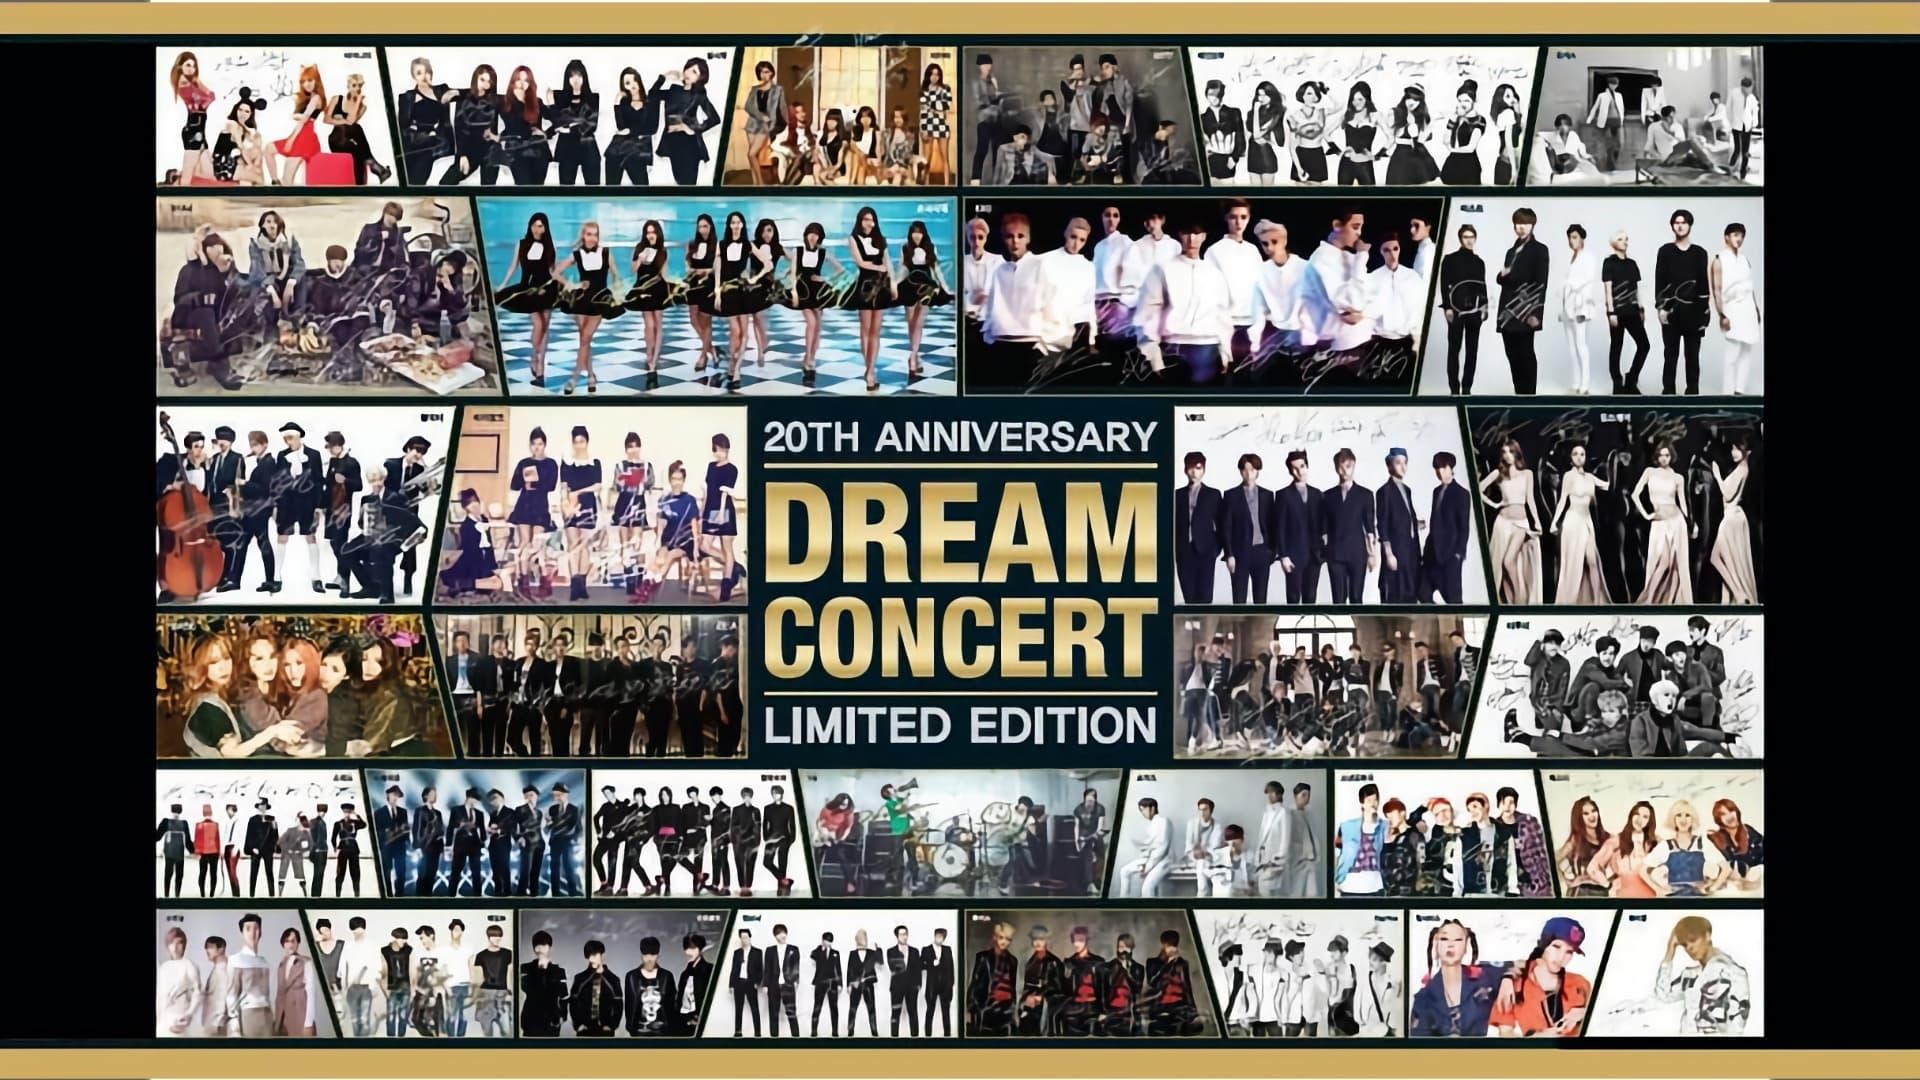 Dream Concert 2014 backdrop